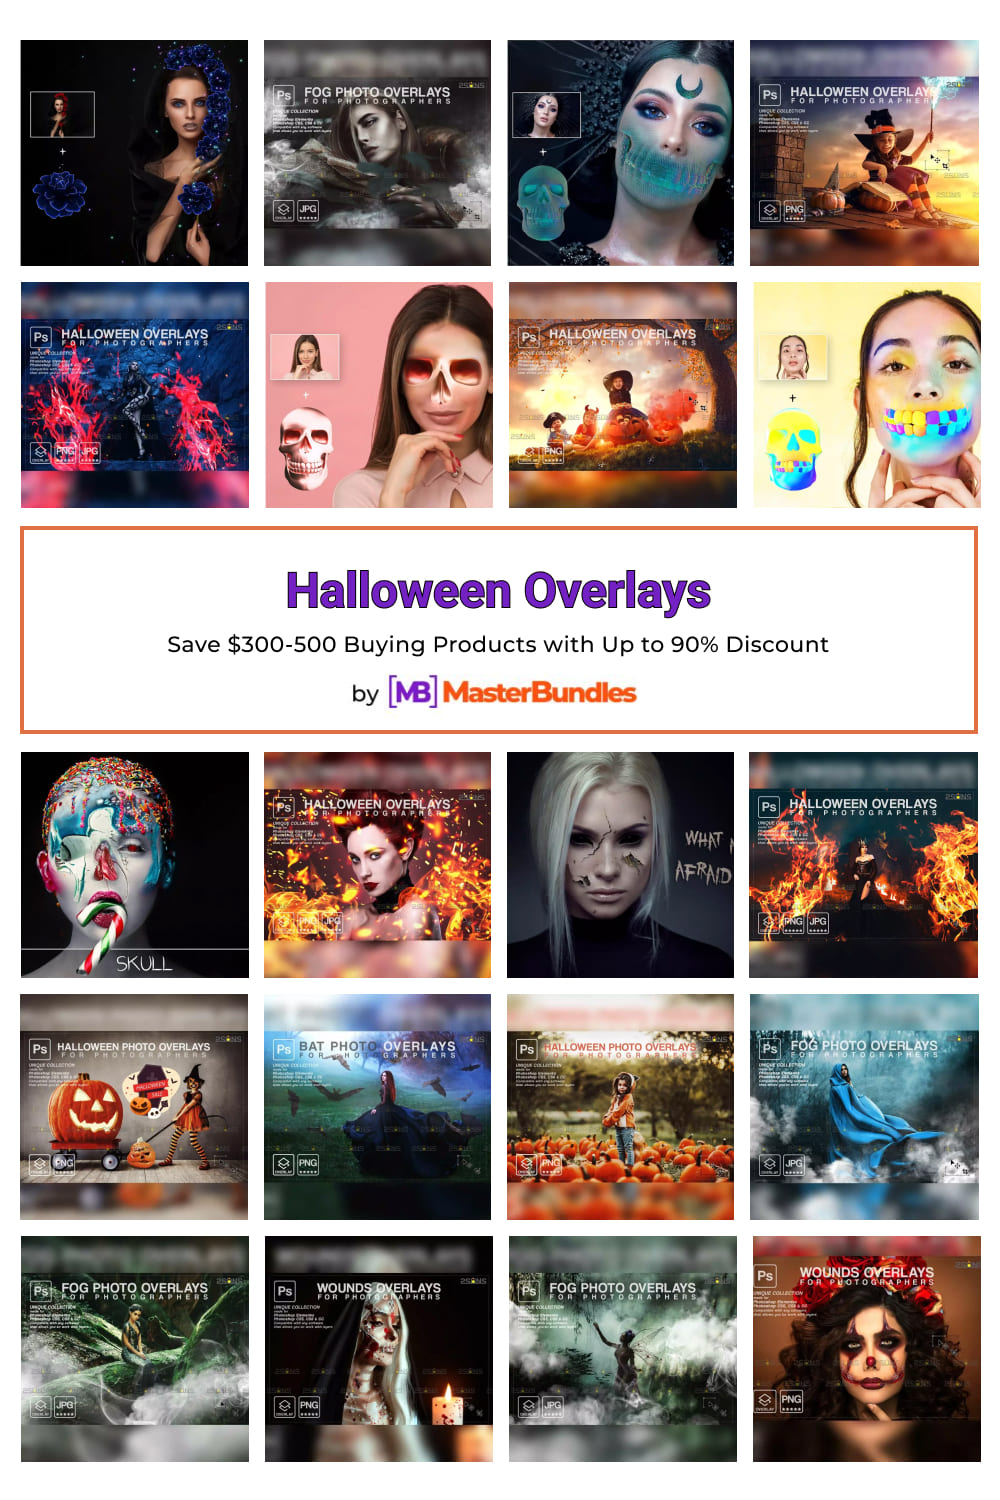 Halloween Overlays Pinterest image.